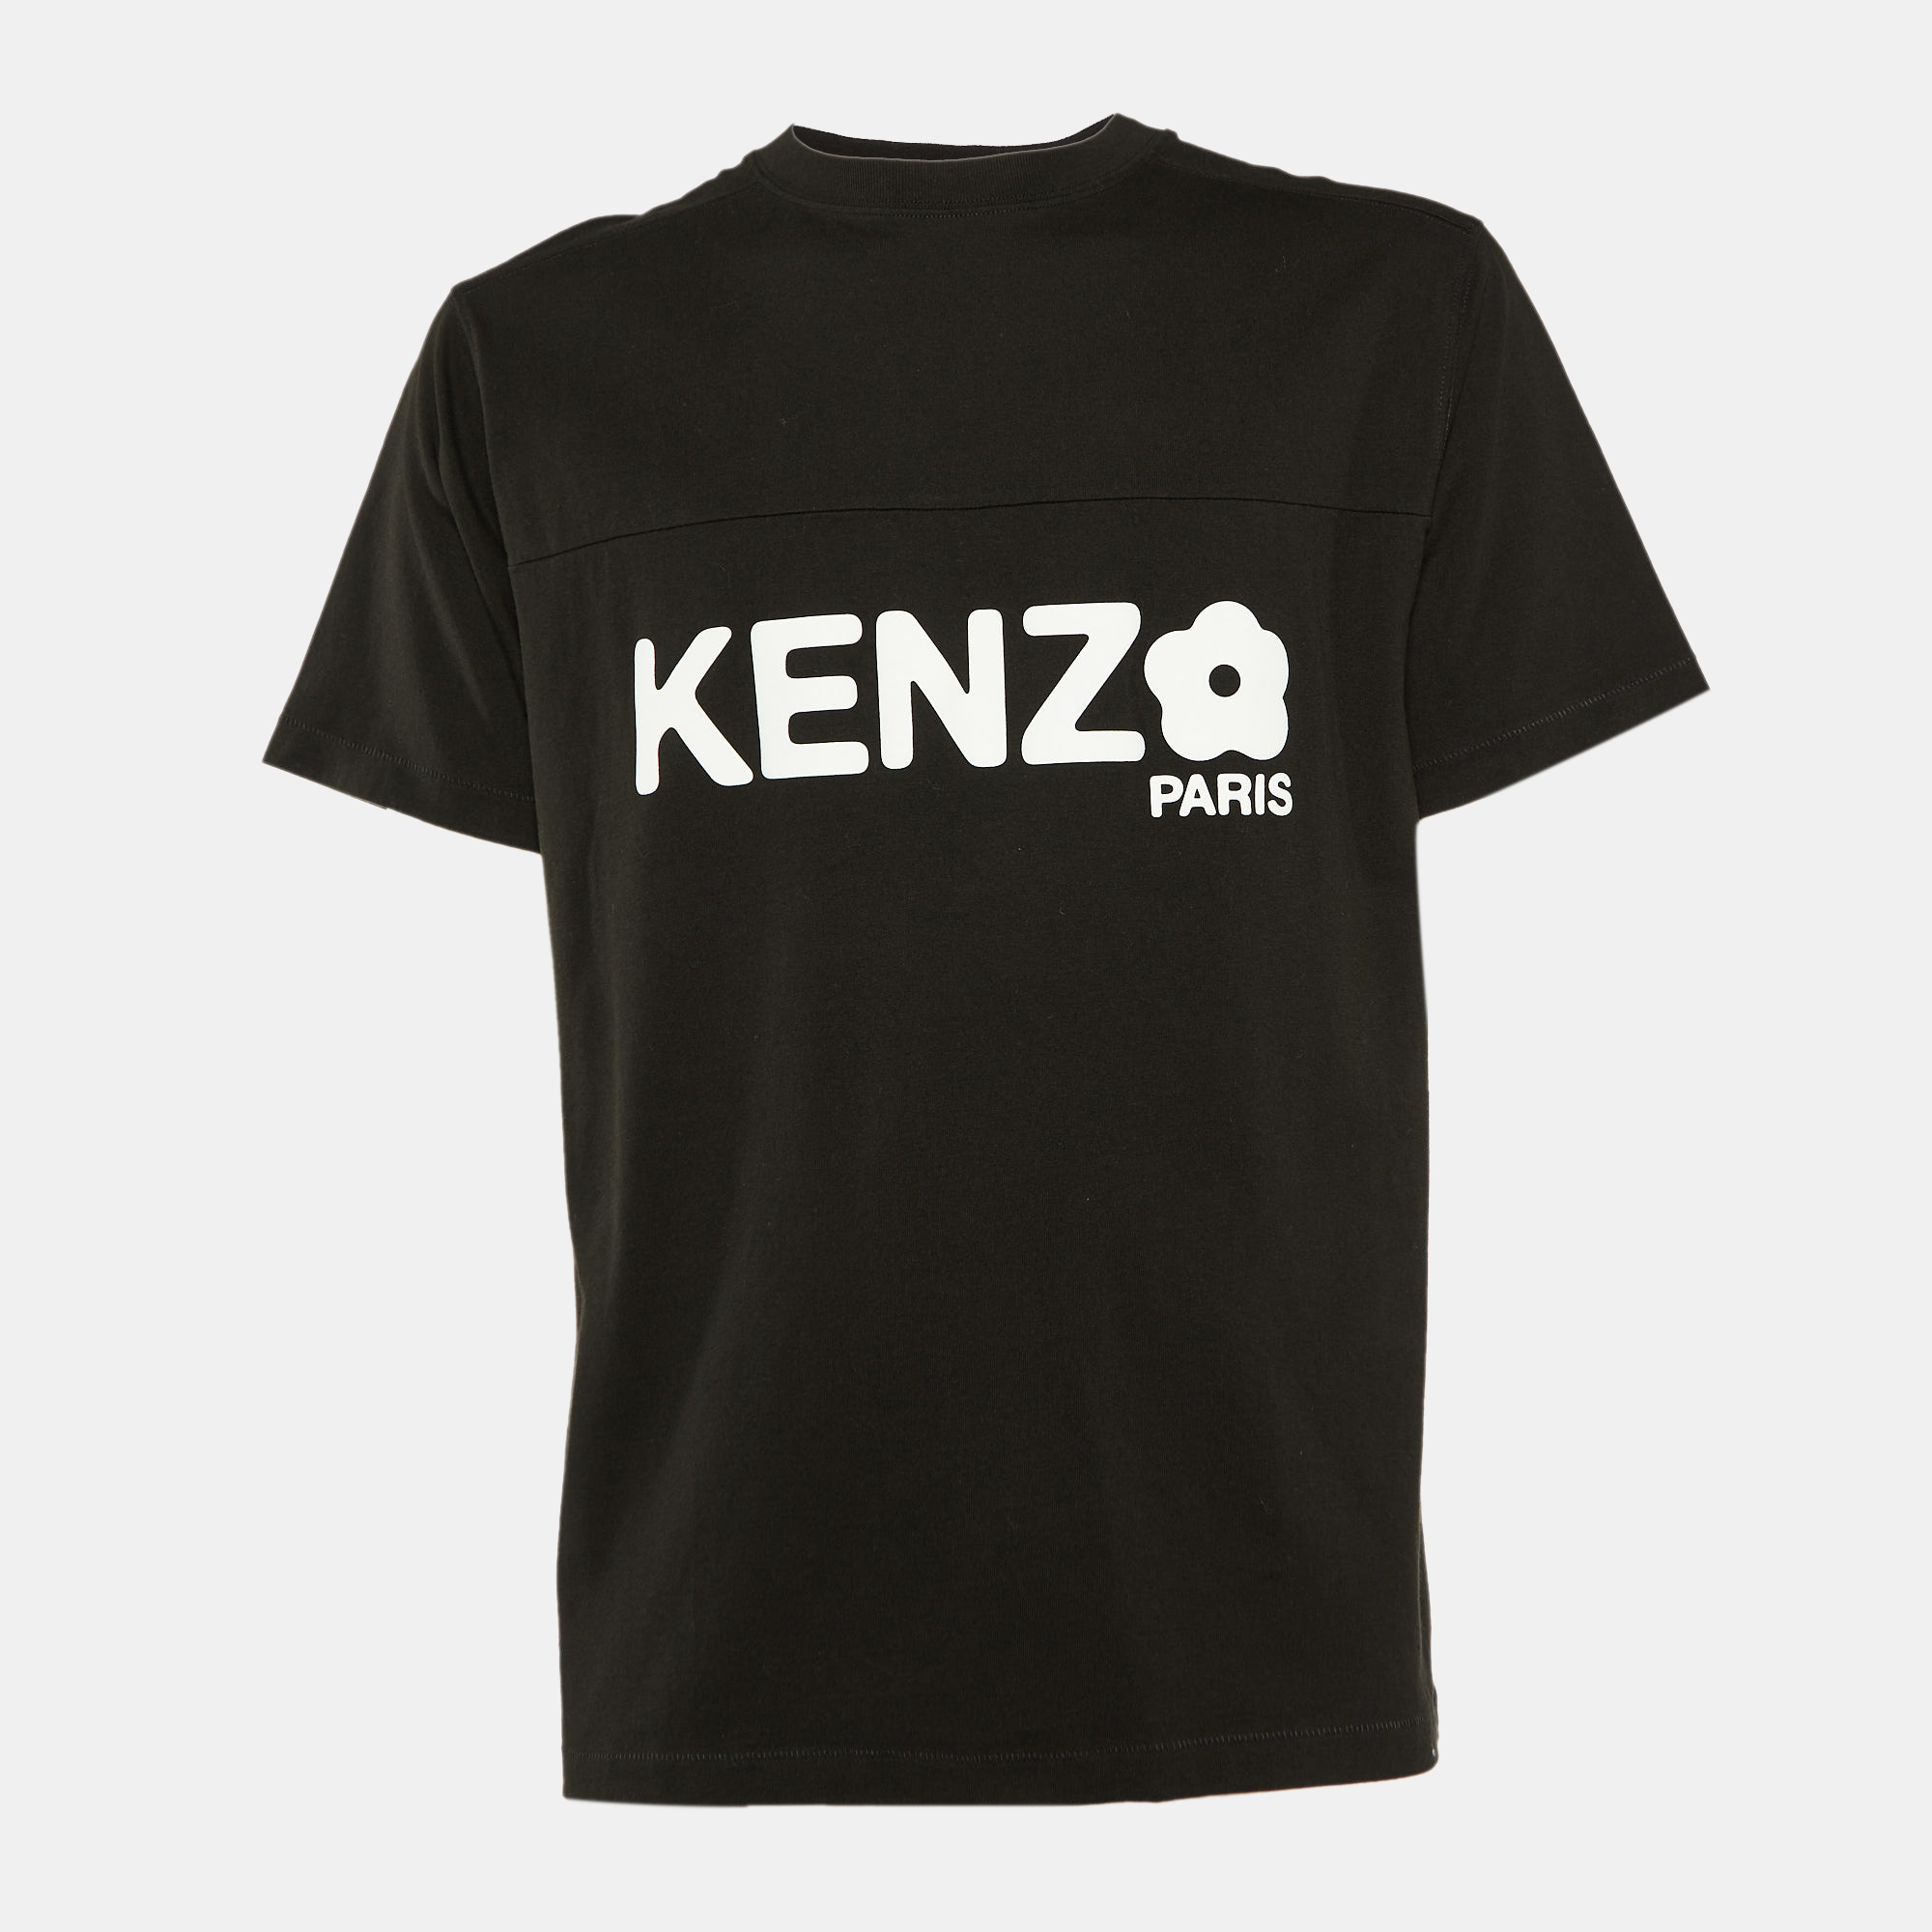 Kenzo Black Boke Flower Logo Printed Cotton Knit T-Shirt S